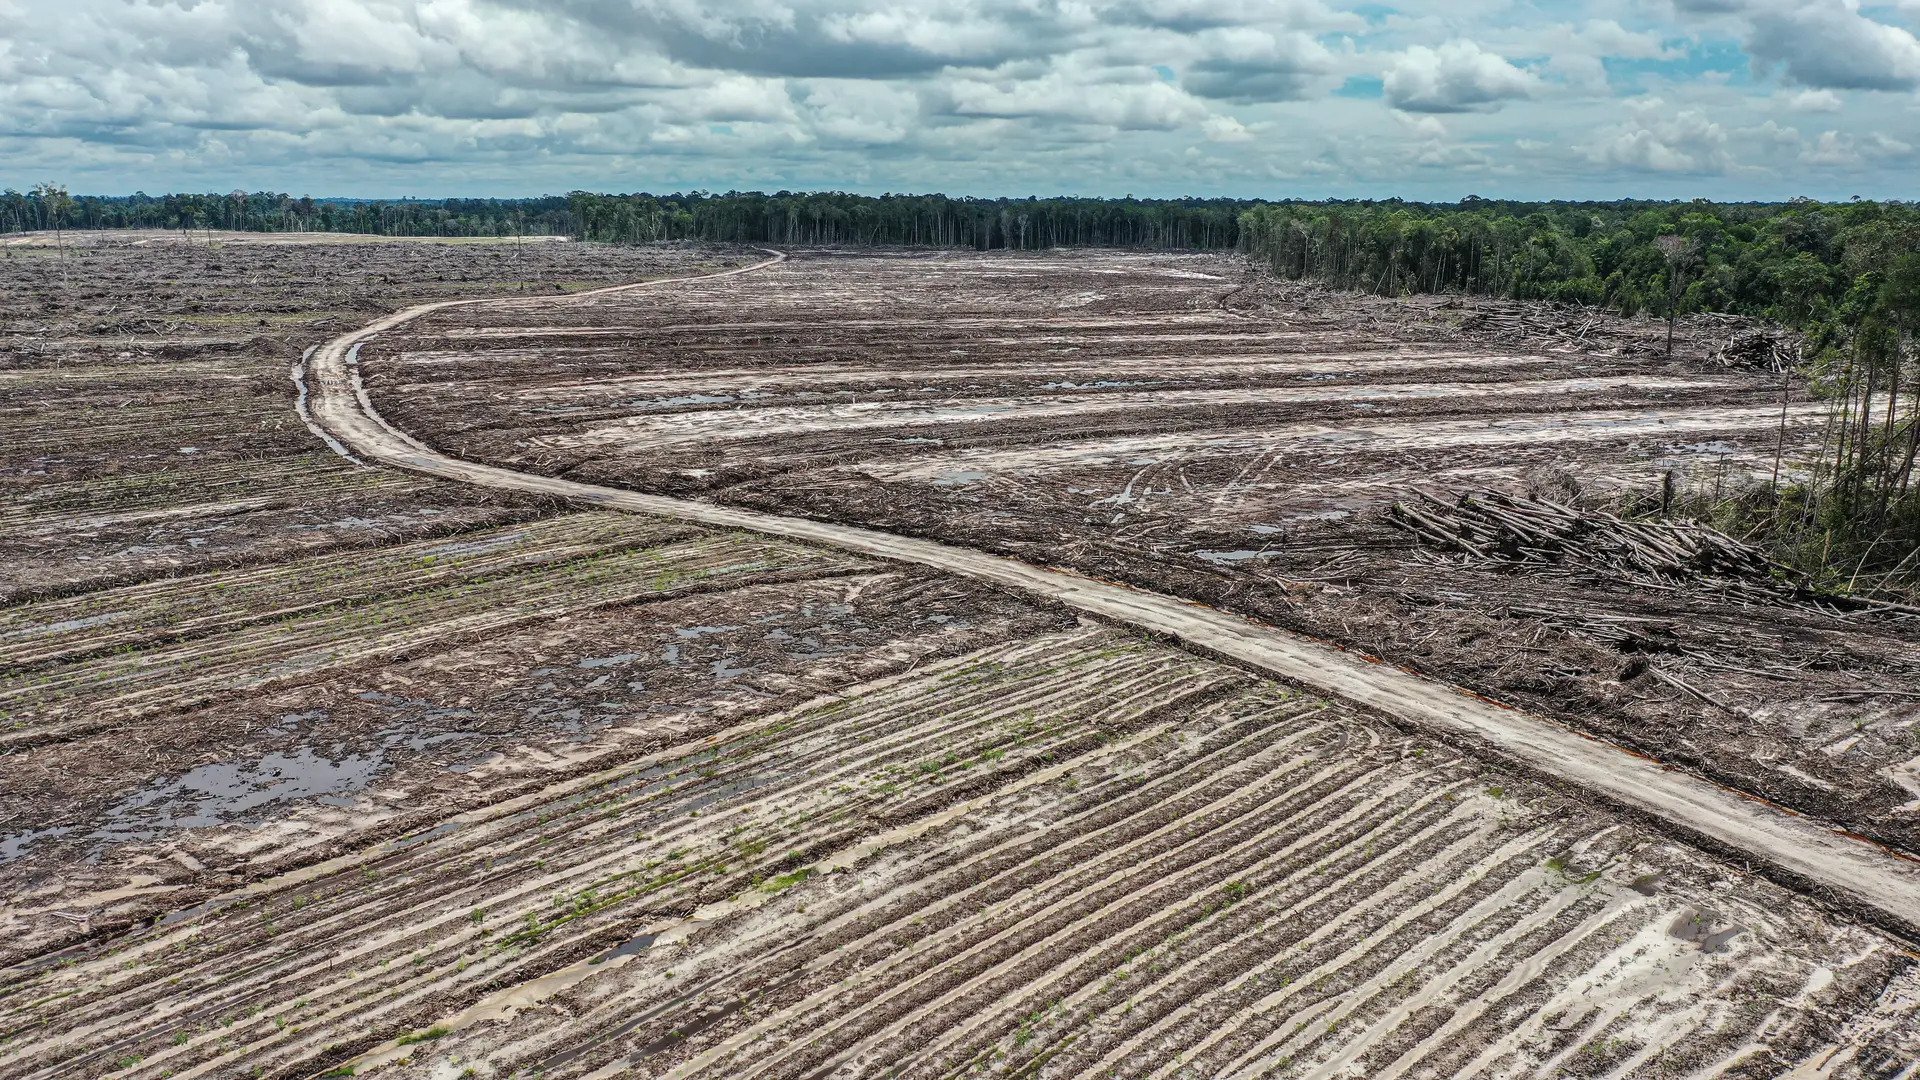 Kata Jokowi, Gerindra, dan Pengamat Soal Proyek Food Estate yang Disebut 'Kejahatan Lingkungan'